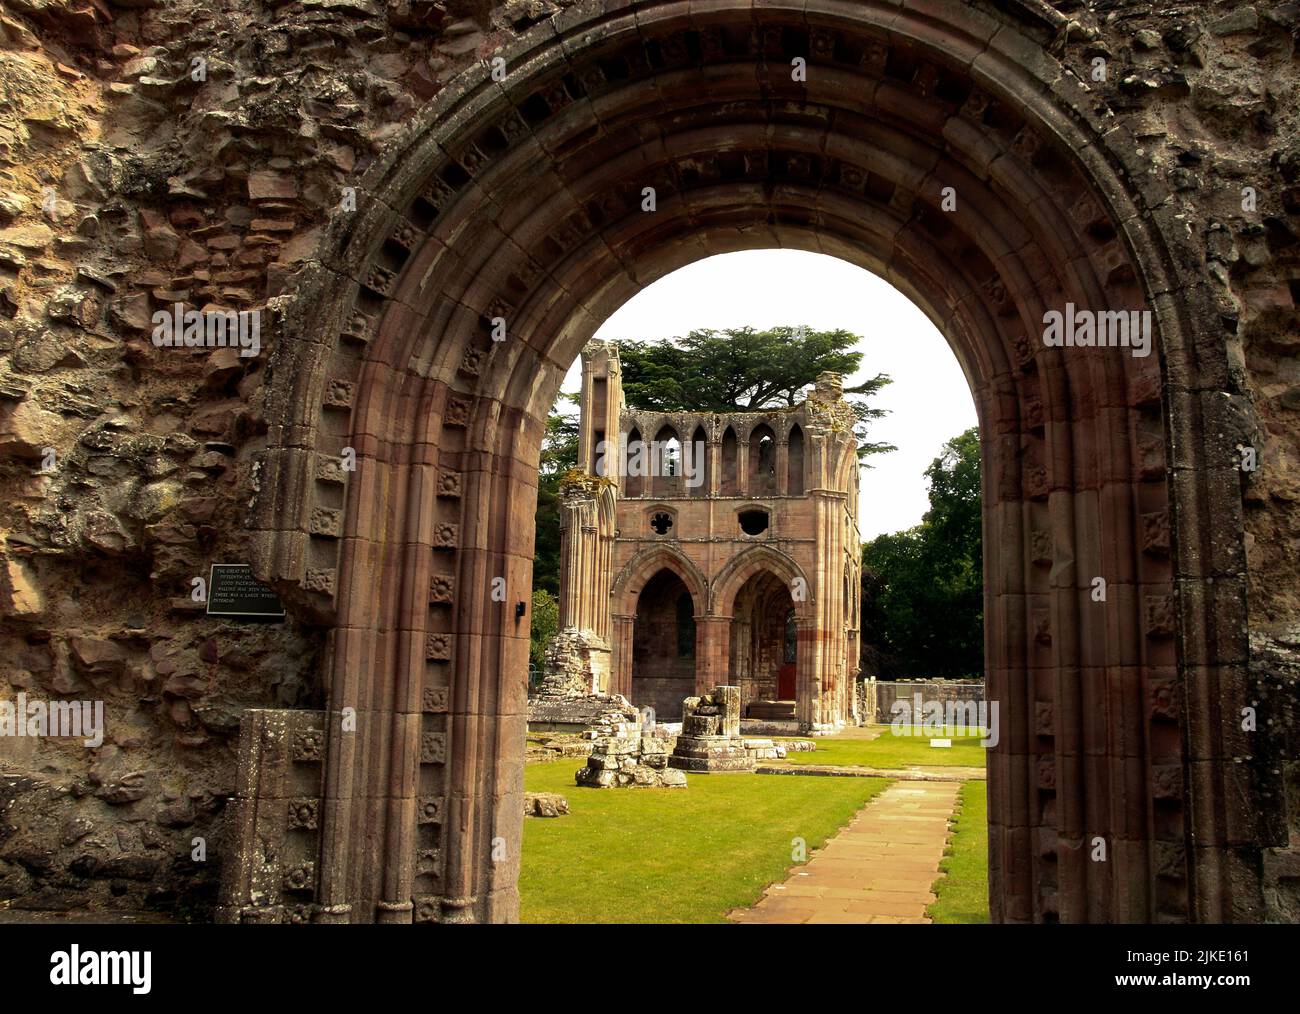 Schottische Ruine, Abteiruine, Ruinen der Dryburgh Abbey, ein prämonstratensisches Kloster in den Scottish Borders, Dryburgh, St Boswells, Schottland, Großbritannien Stockfoto